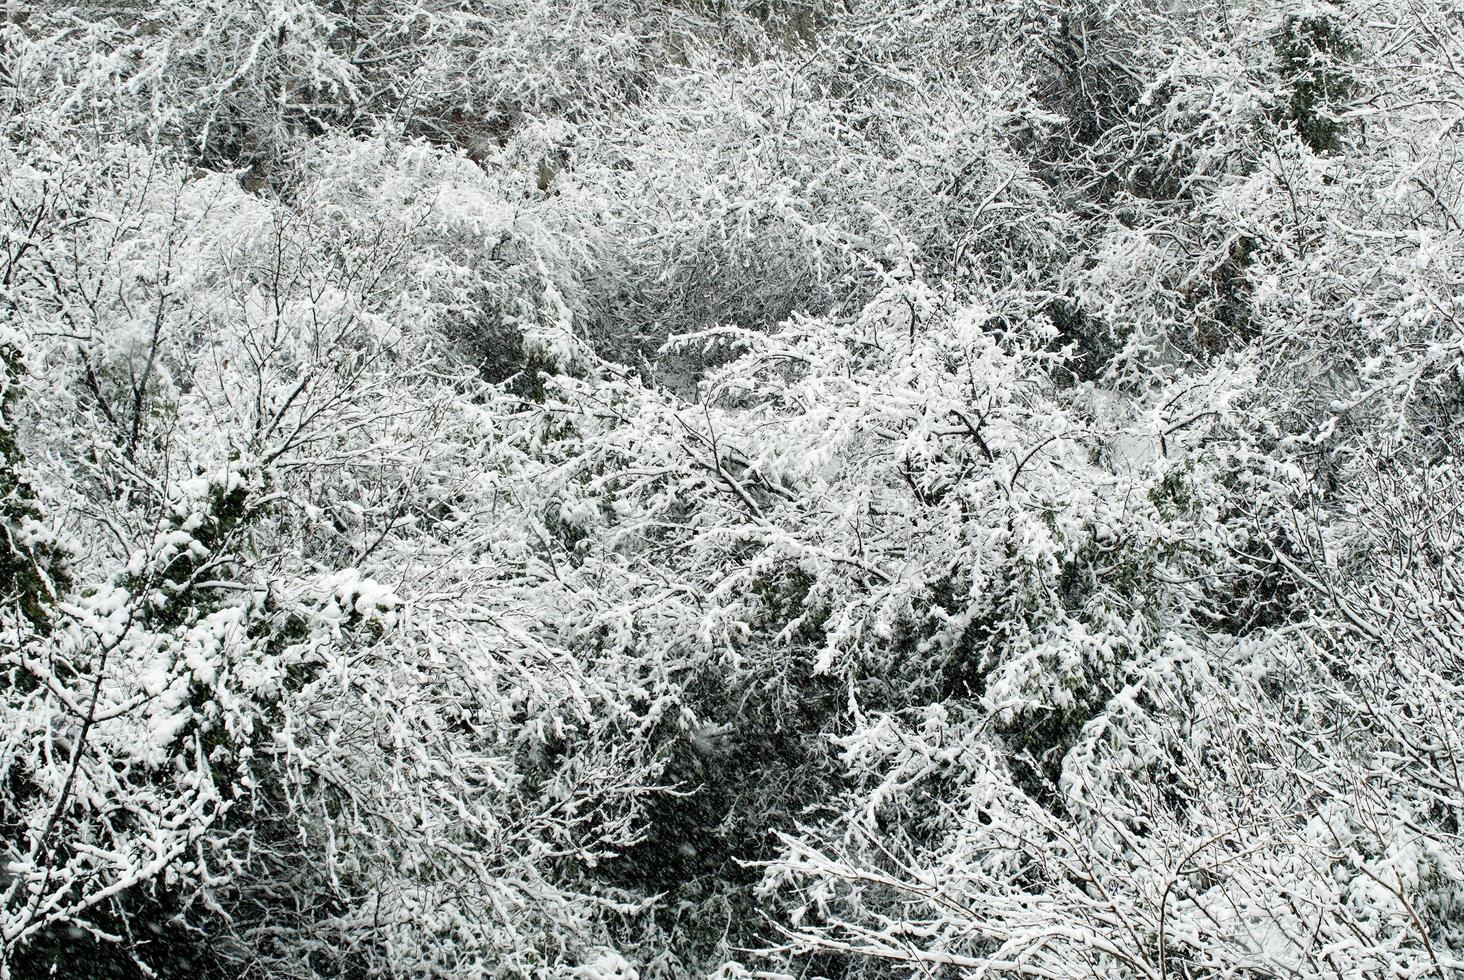 árboles cubiertos de nieve foto